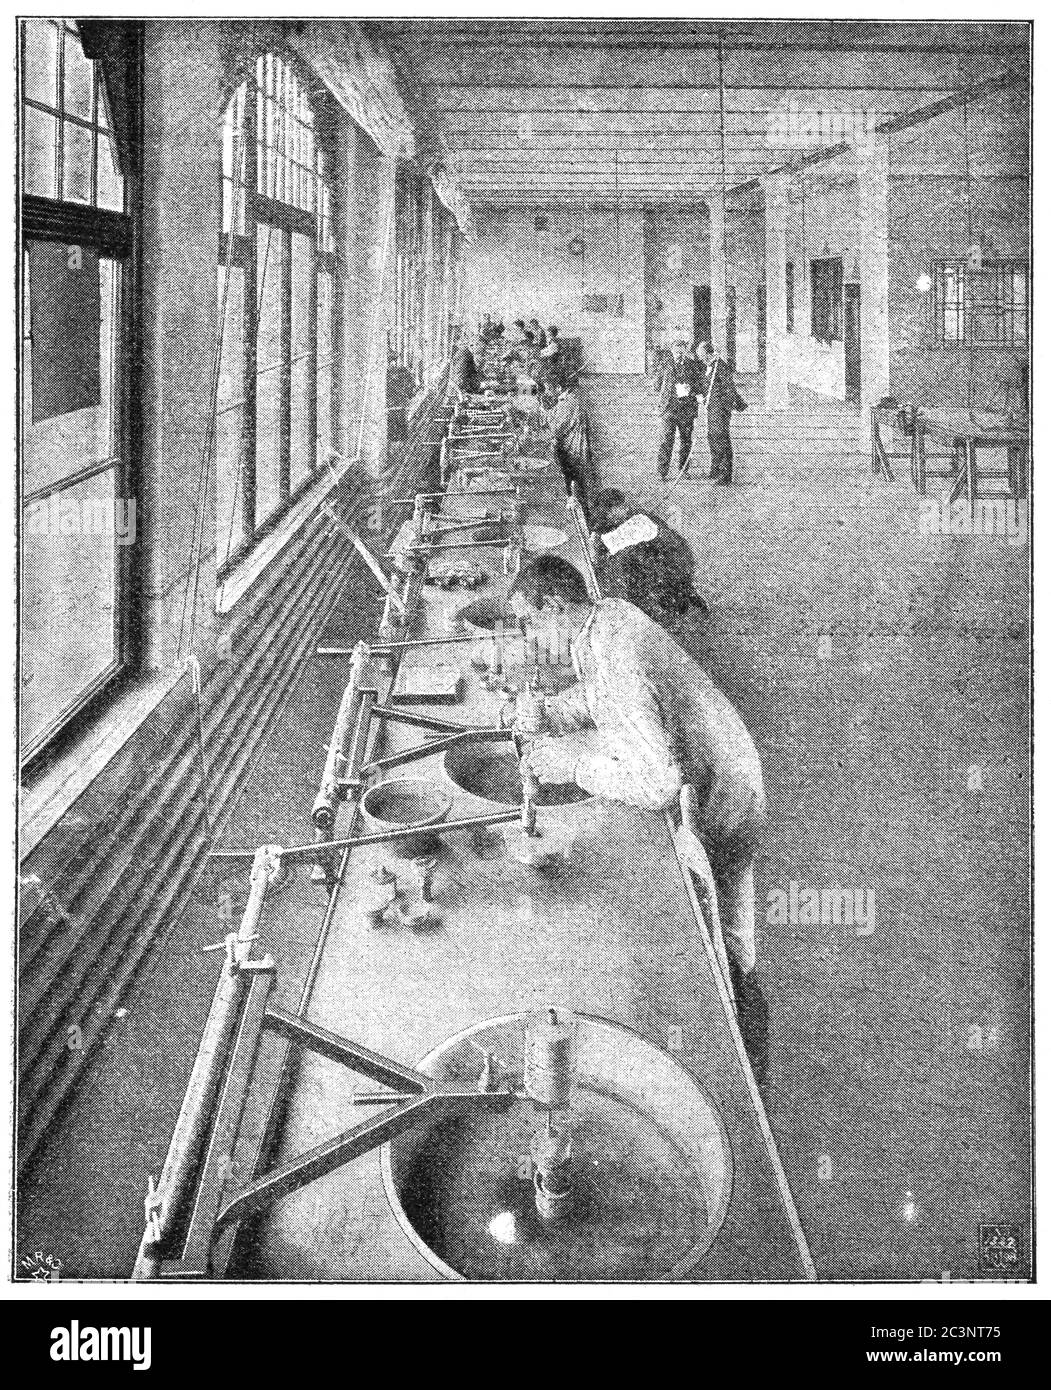 Automated lens polishing workshop C. P. Goerz. Illustration of the 19th century. White background. Stock Photo